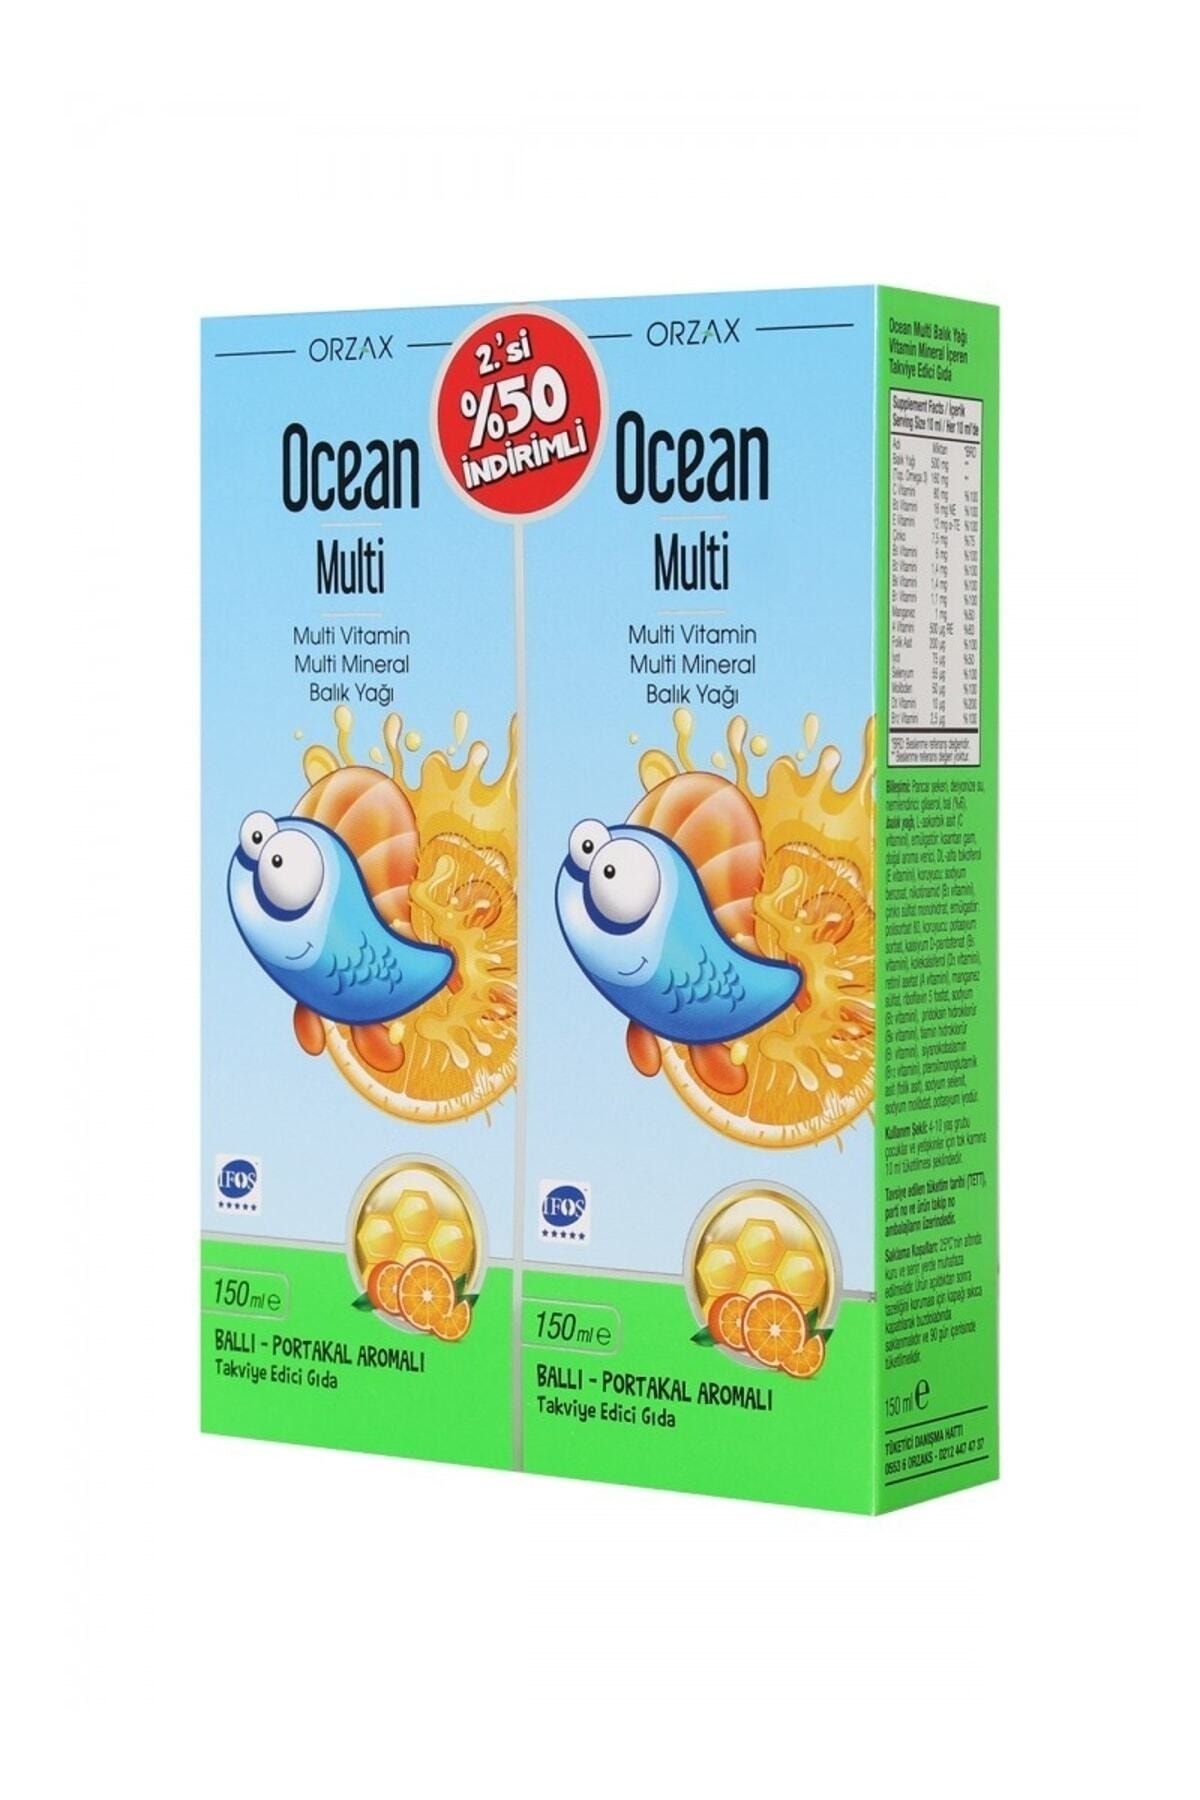 Ocean Multi Şurup Ballı Portakal Aromalı Balık Yağı 2. Si %50